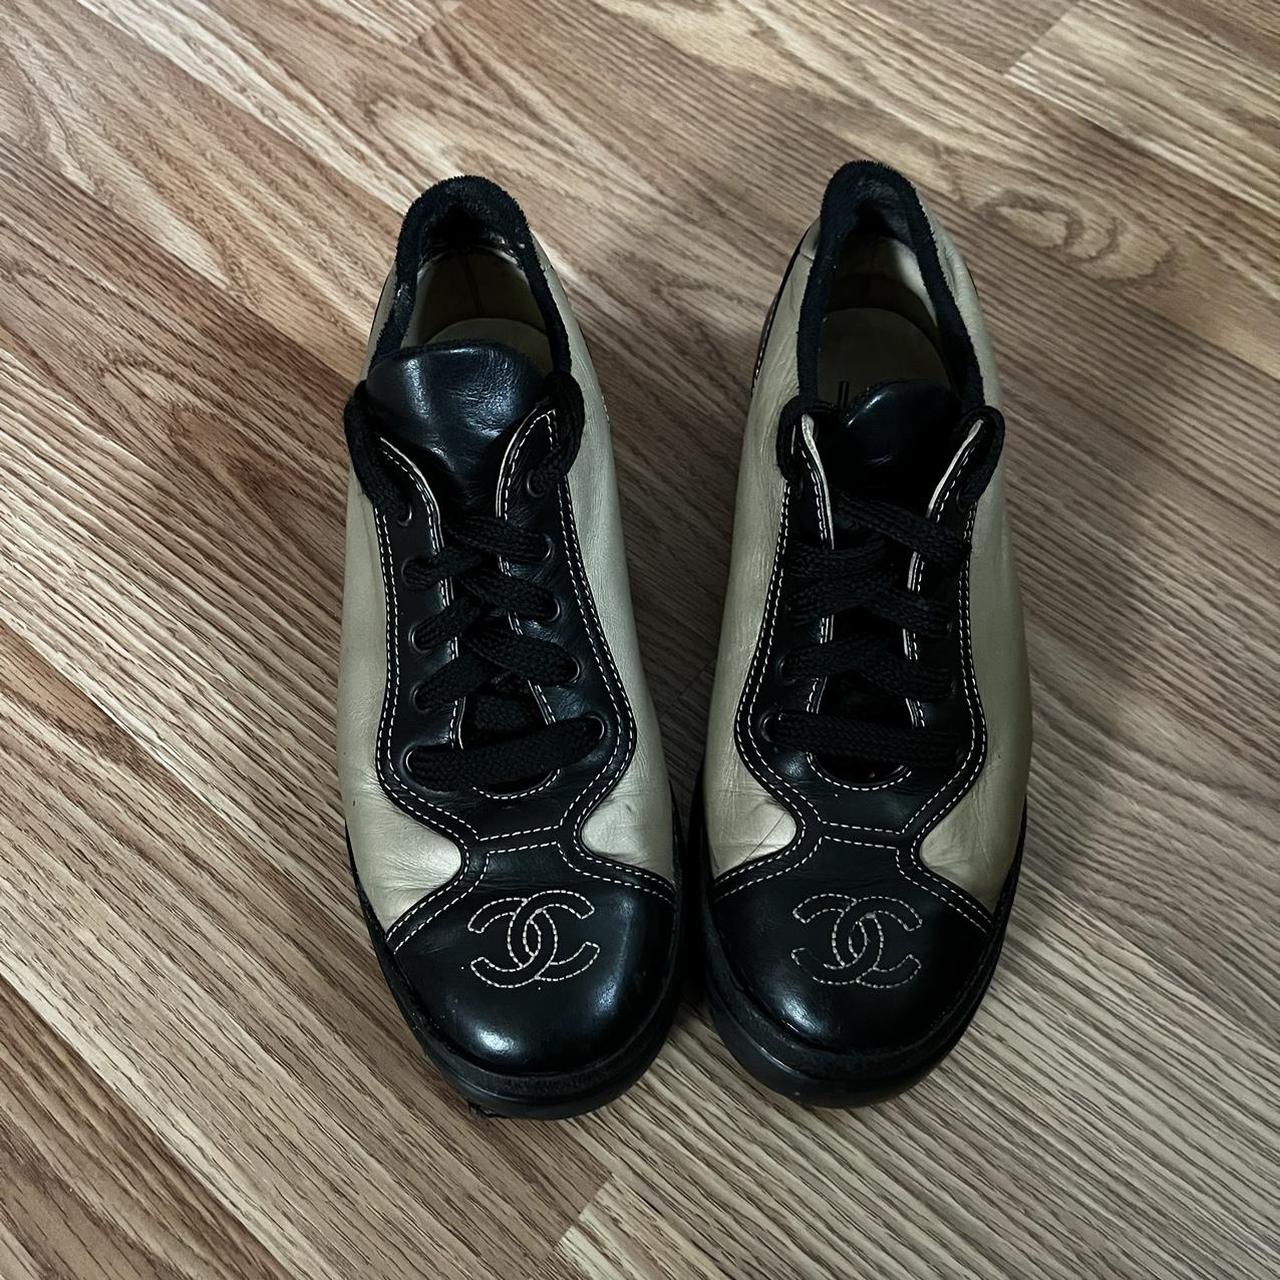 Chanel sneakers. Size 38 1/2 (US women 8.5 US men